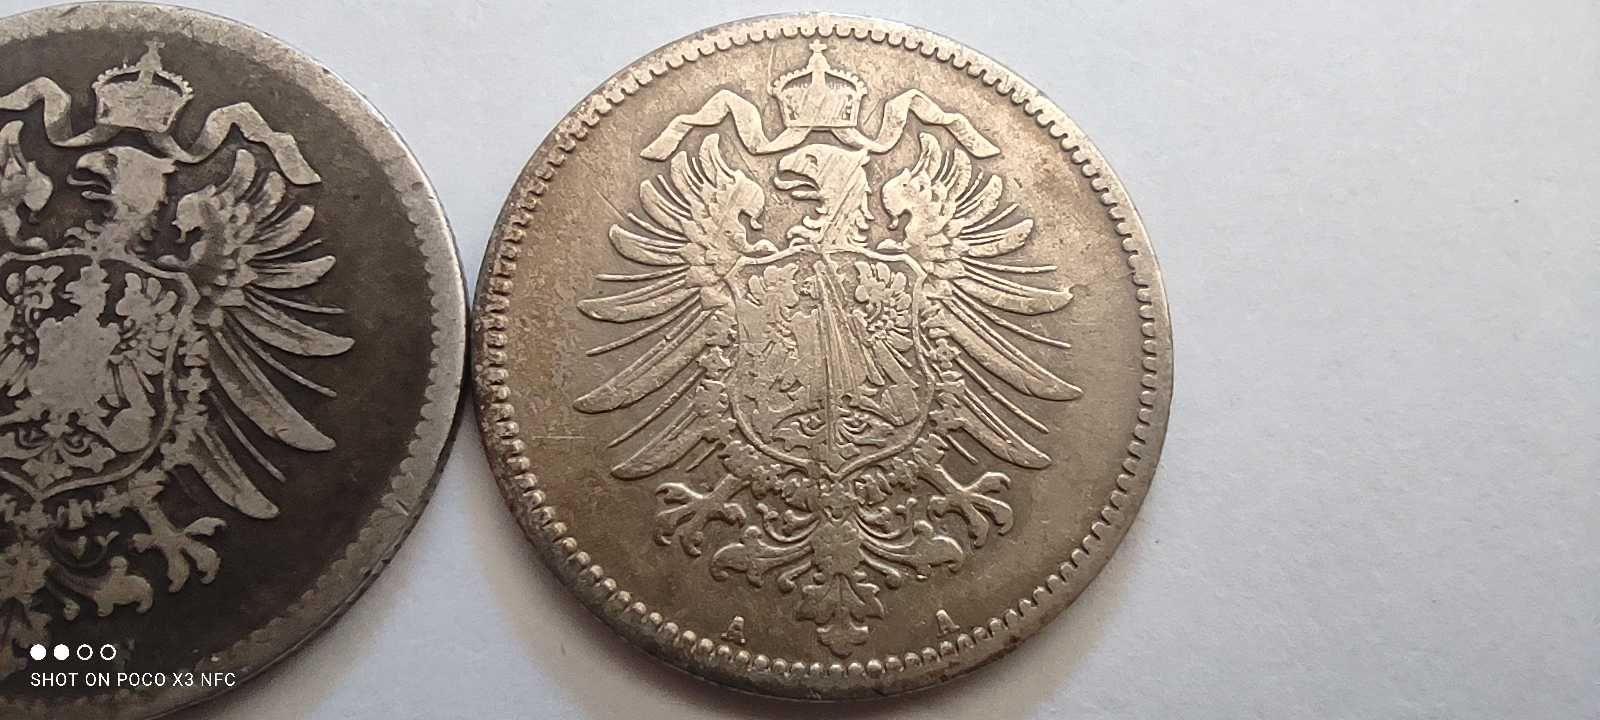 Monety srebrne Niemcy 1 marka 1875 A i F  srebro ag stare